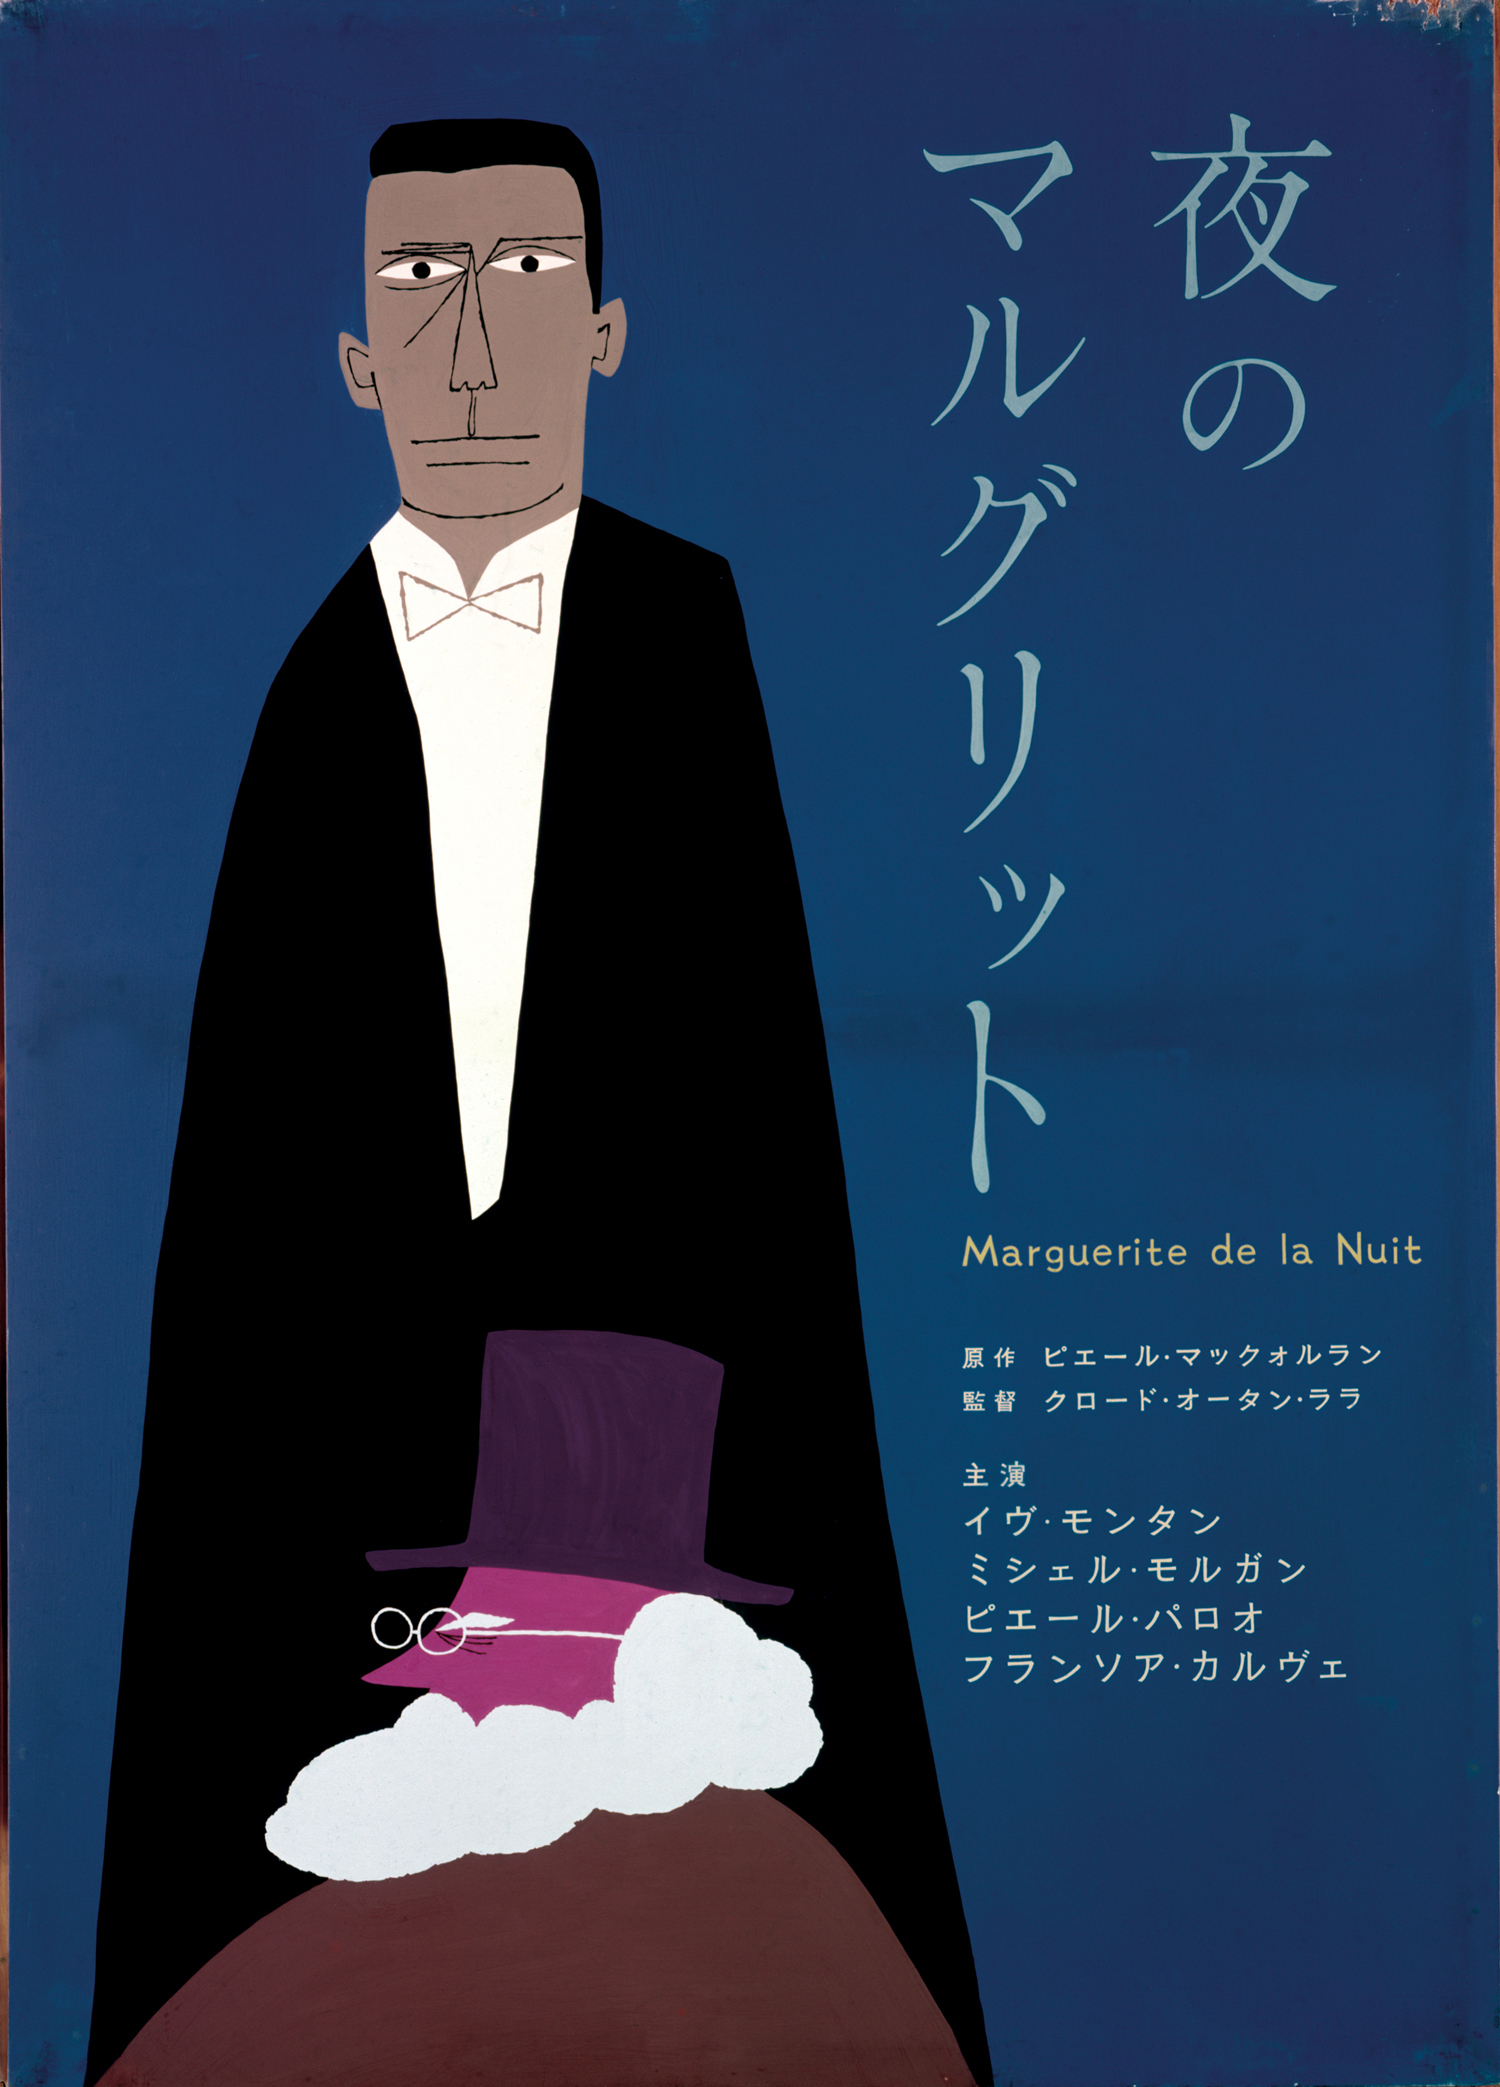 日宣美賞を受賞した、和田誠の「夜のマルグリット」ポスター〈1957年〉